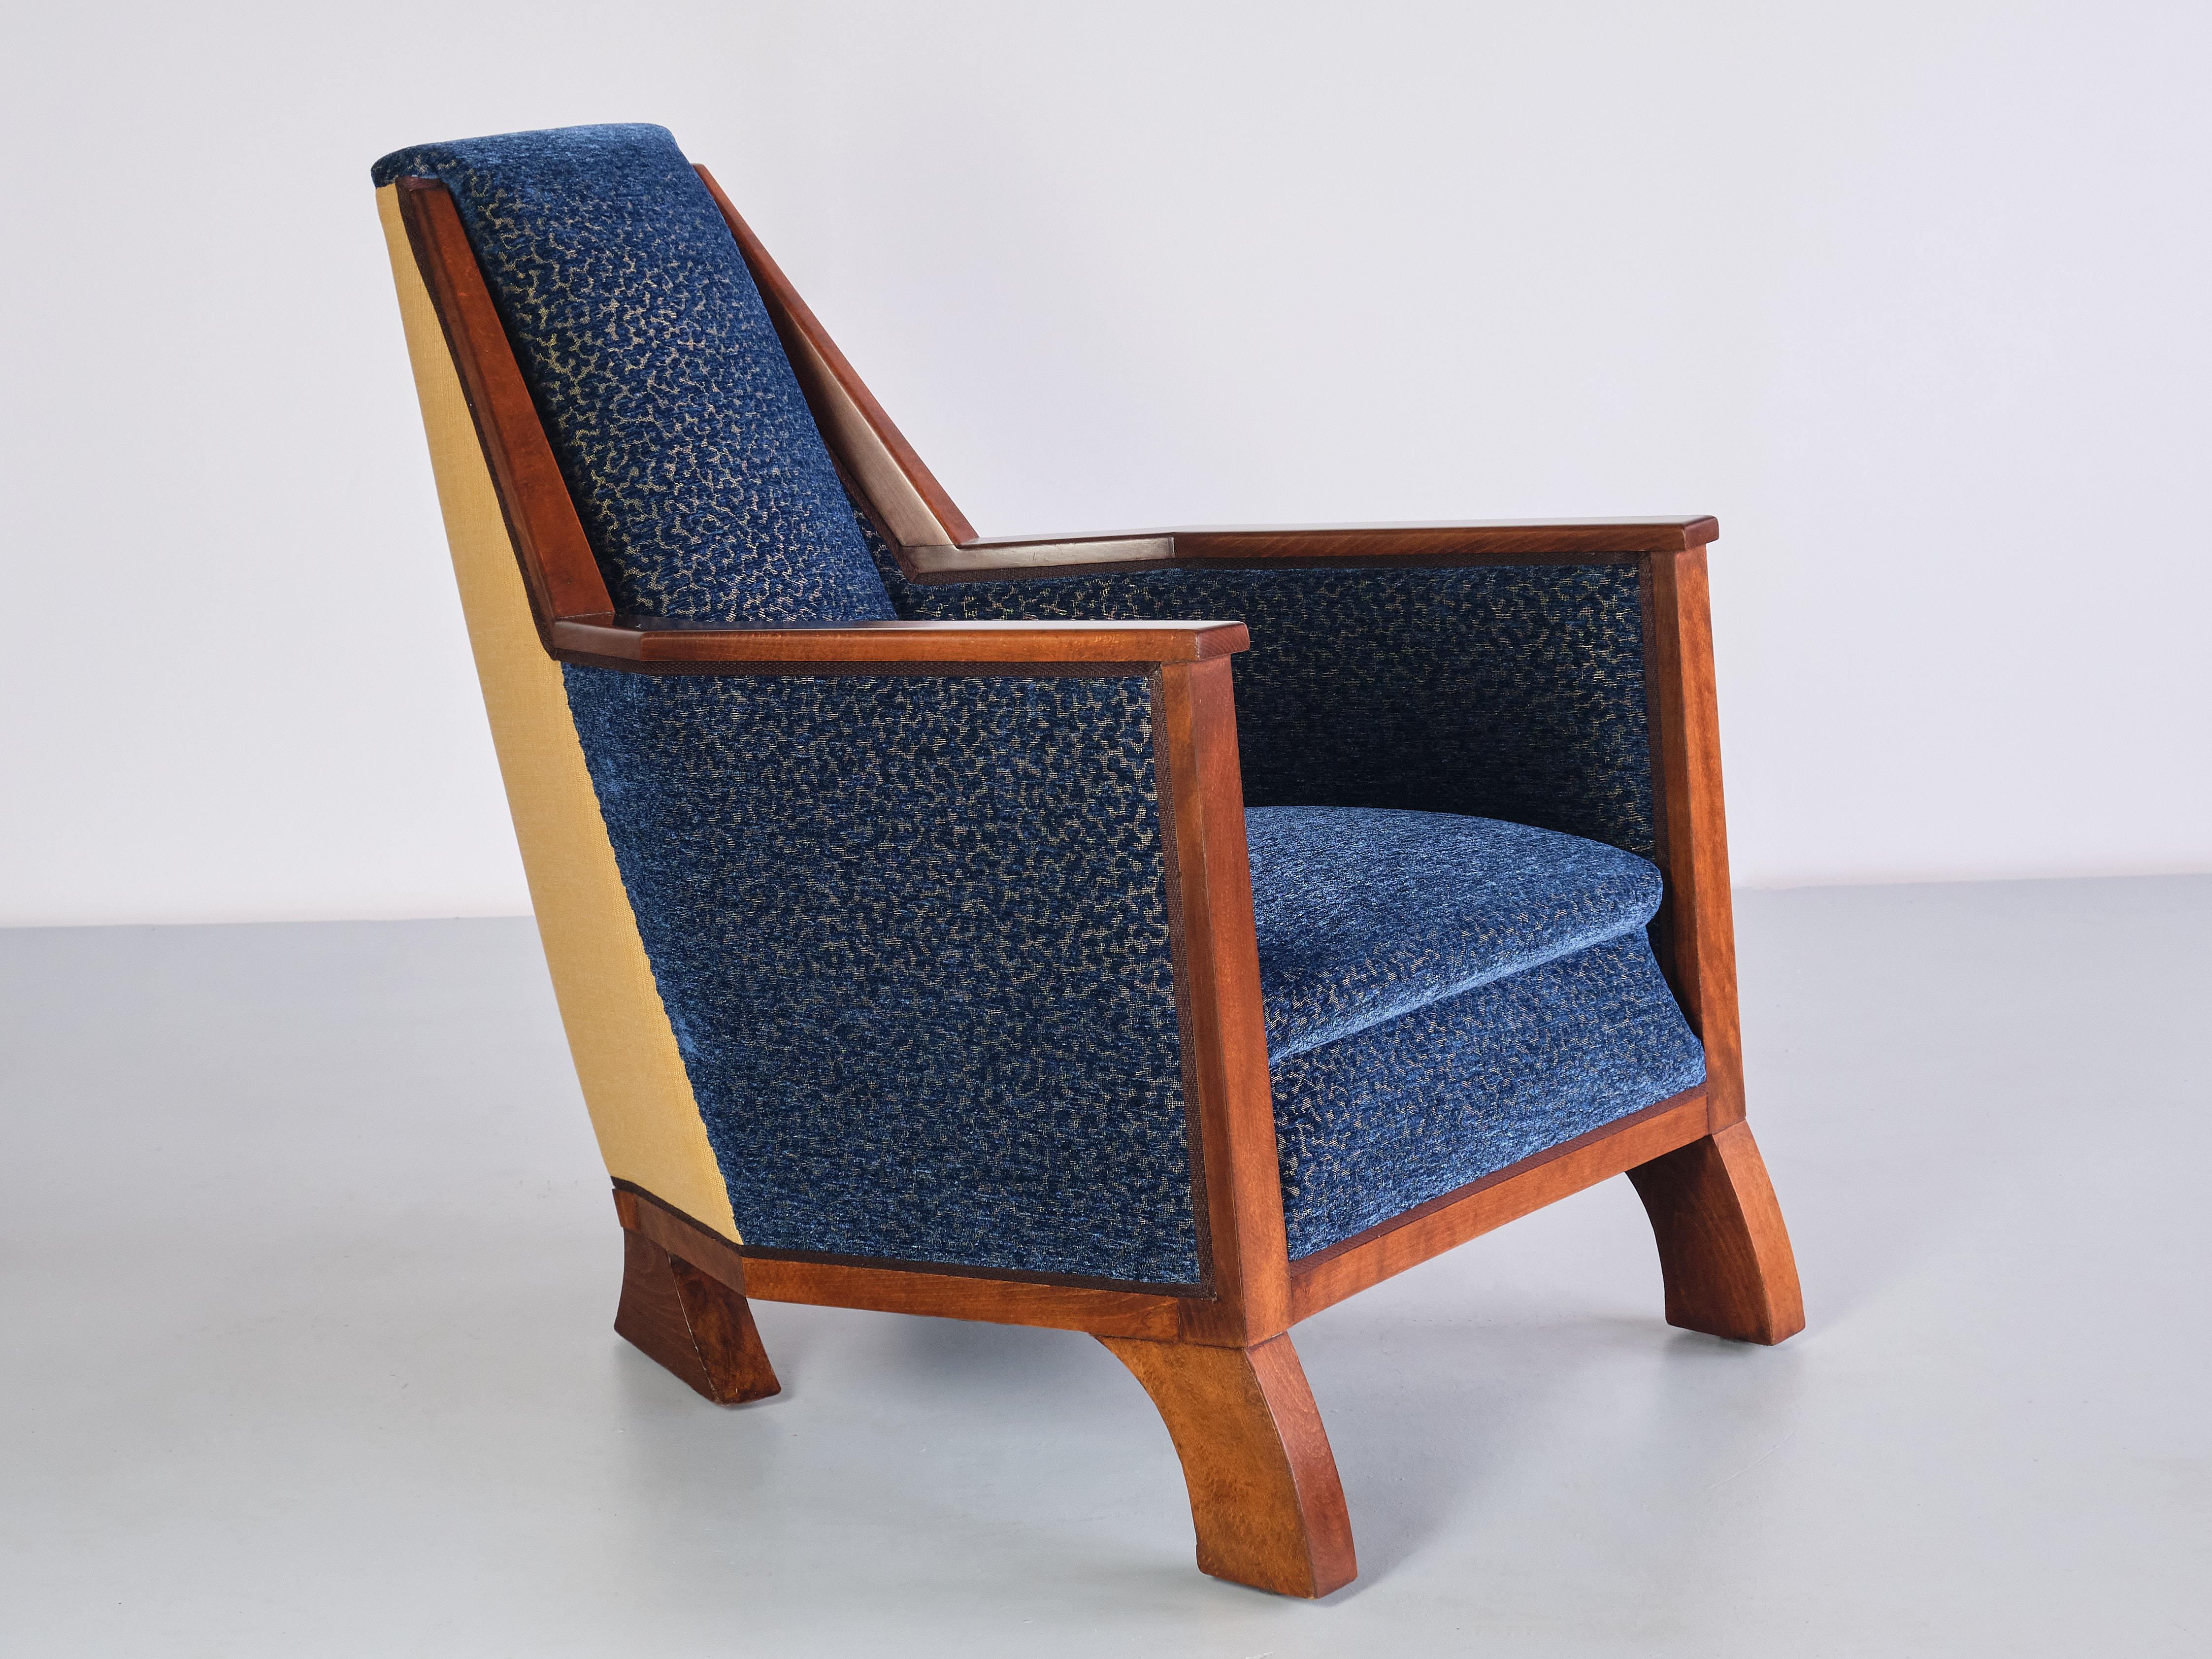 Dieser außergewöhnliche Sessel wurde Ende der 1920er Jahre von einem Tischlermeister in Nordfrankreich hergestellt. Der Stuhl wurde für ein Privathaus in der Region Roubaix entworfen.

Die verschiedenen Winkel und Formen des Stuhls machen ihn zu